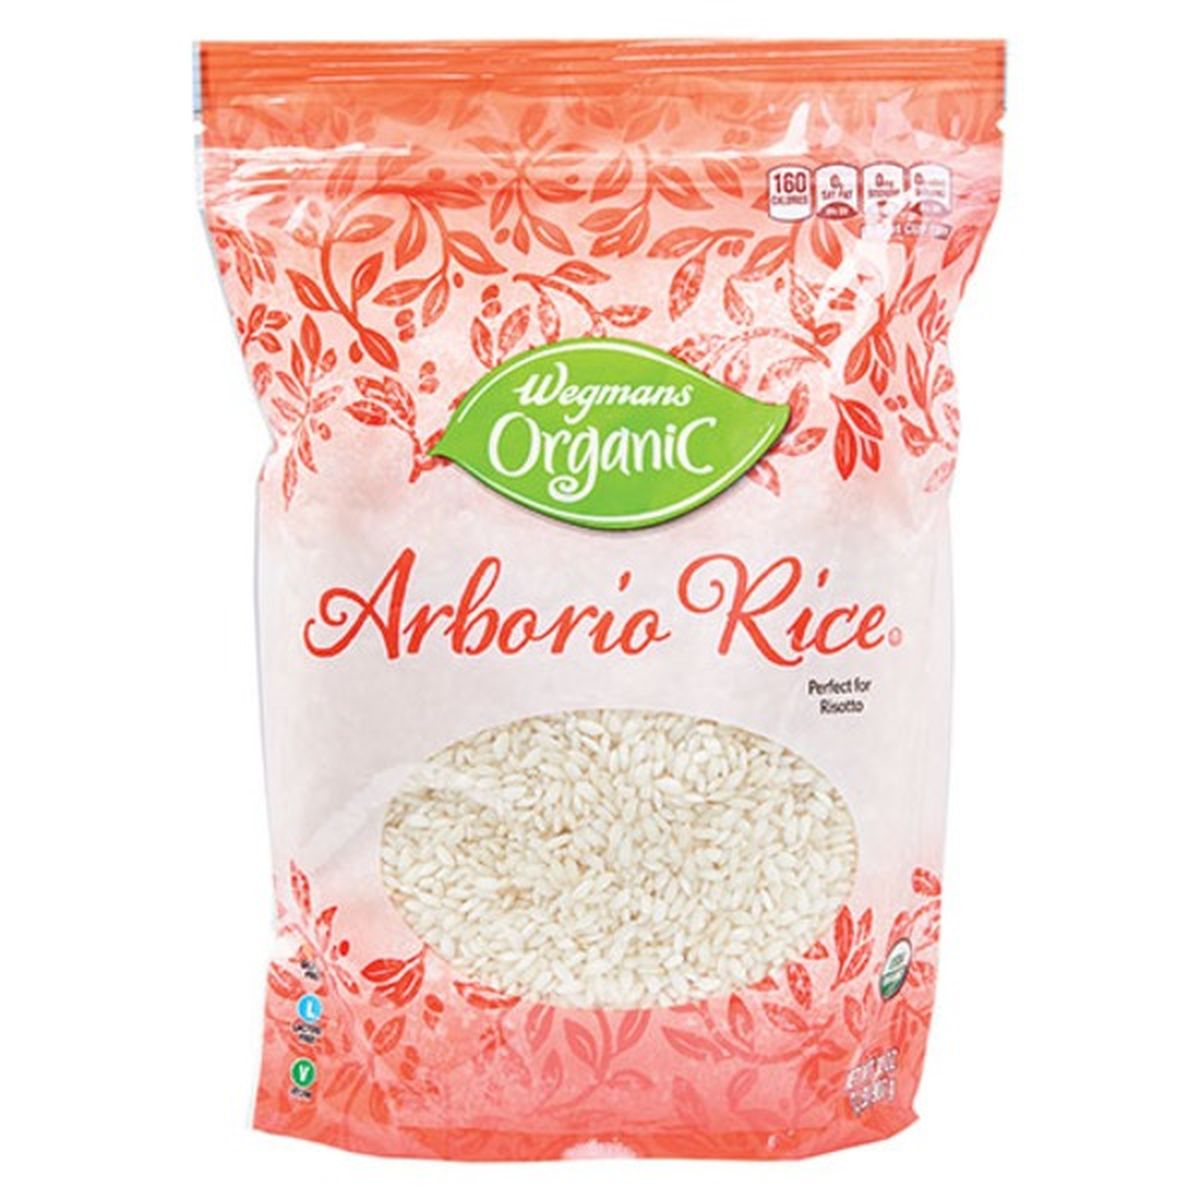 Calories in Wegmans Organic Arborio Rice